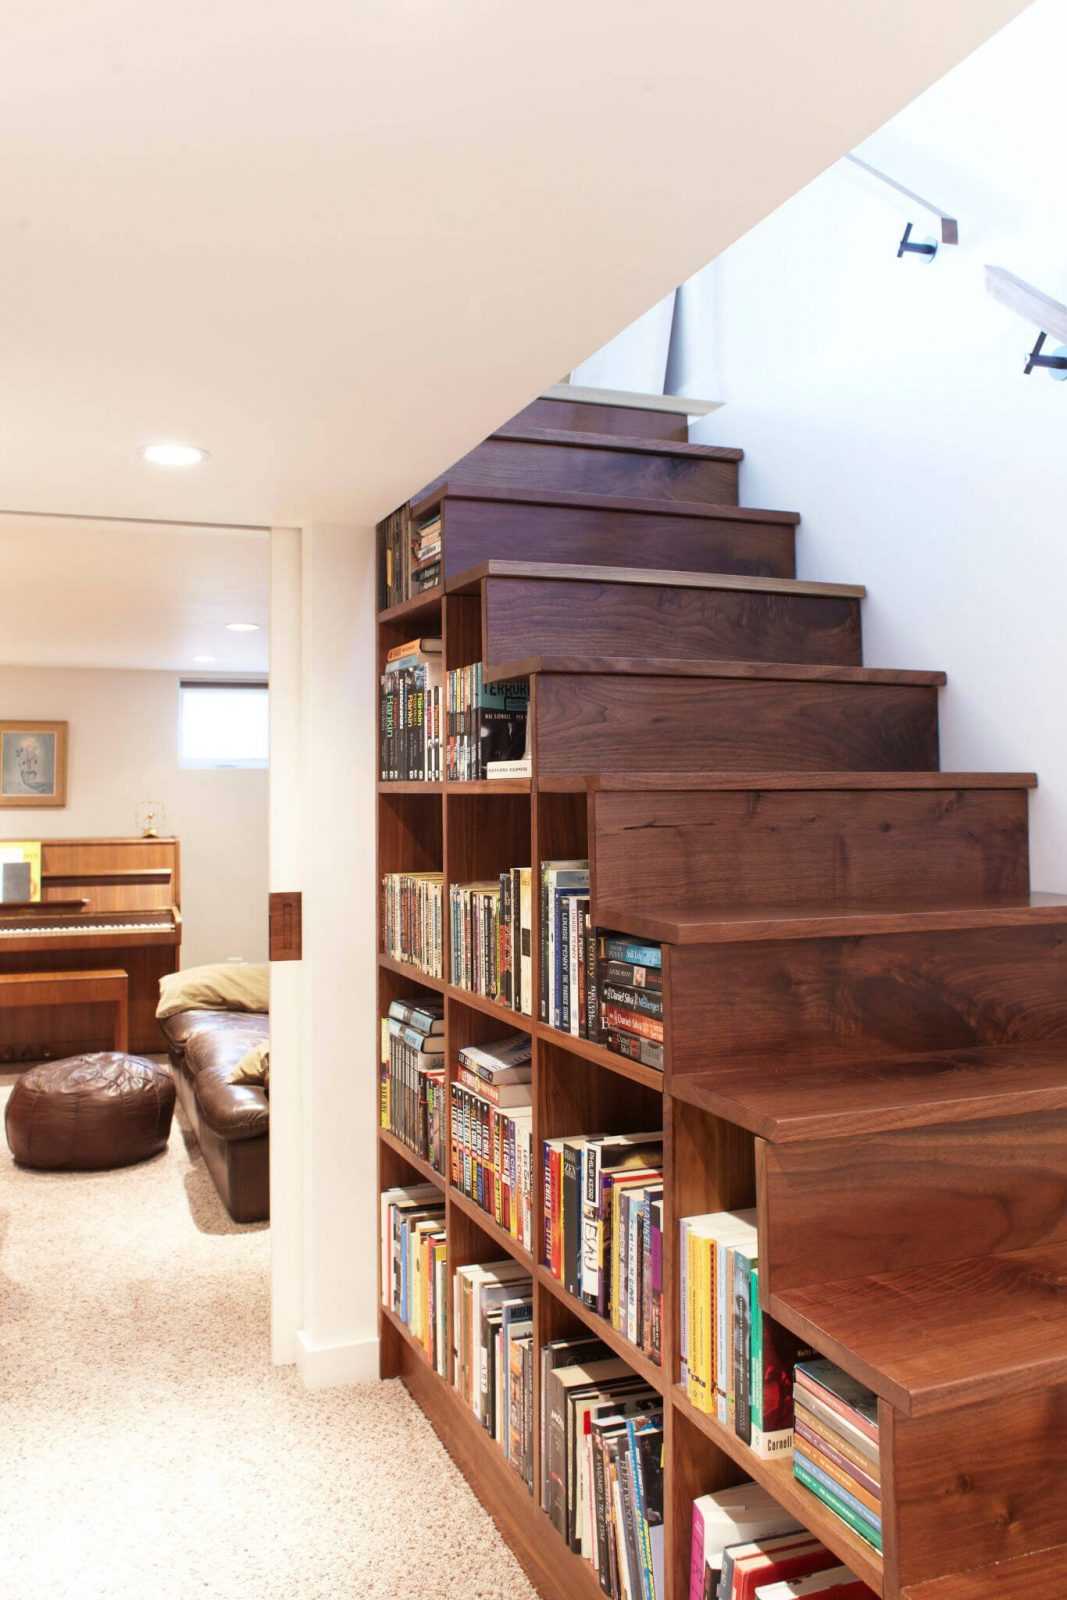  ديكورات خشب (أفضل الأفكار لعمل ديكورات خشب تعطي فخامه للمنزل) Bookshelf-ideas-decor-7